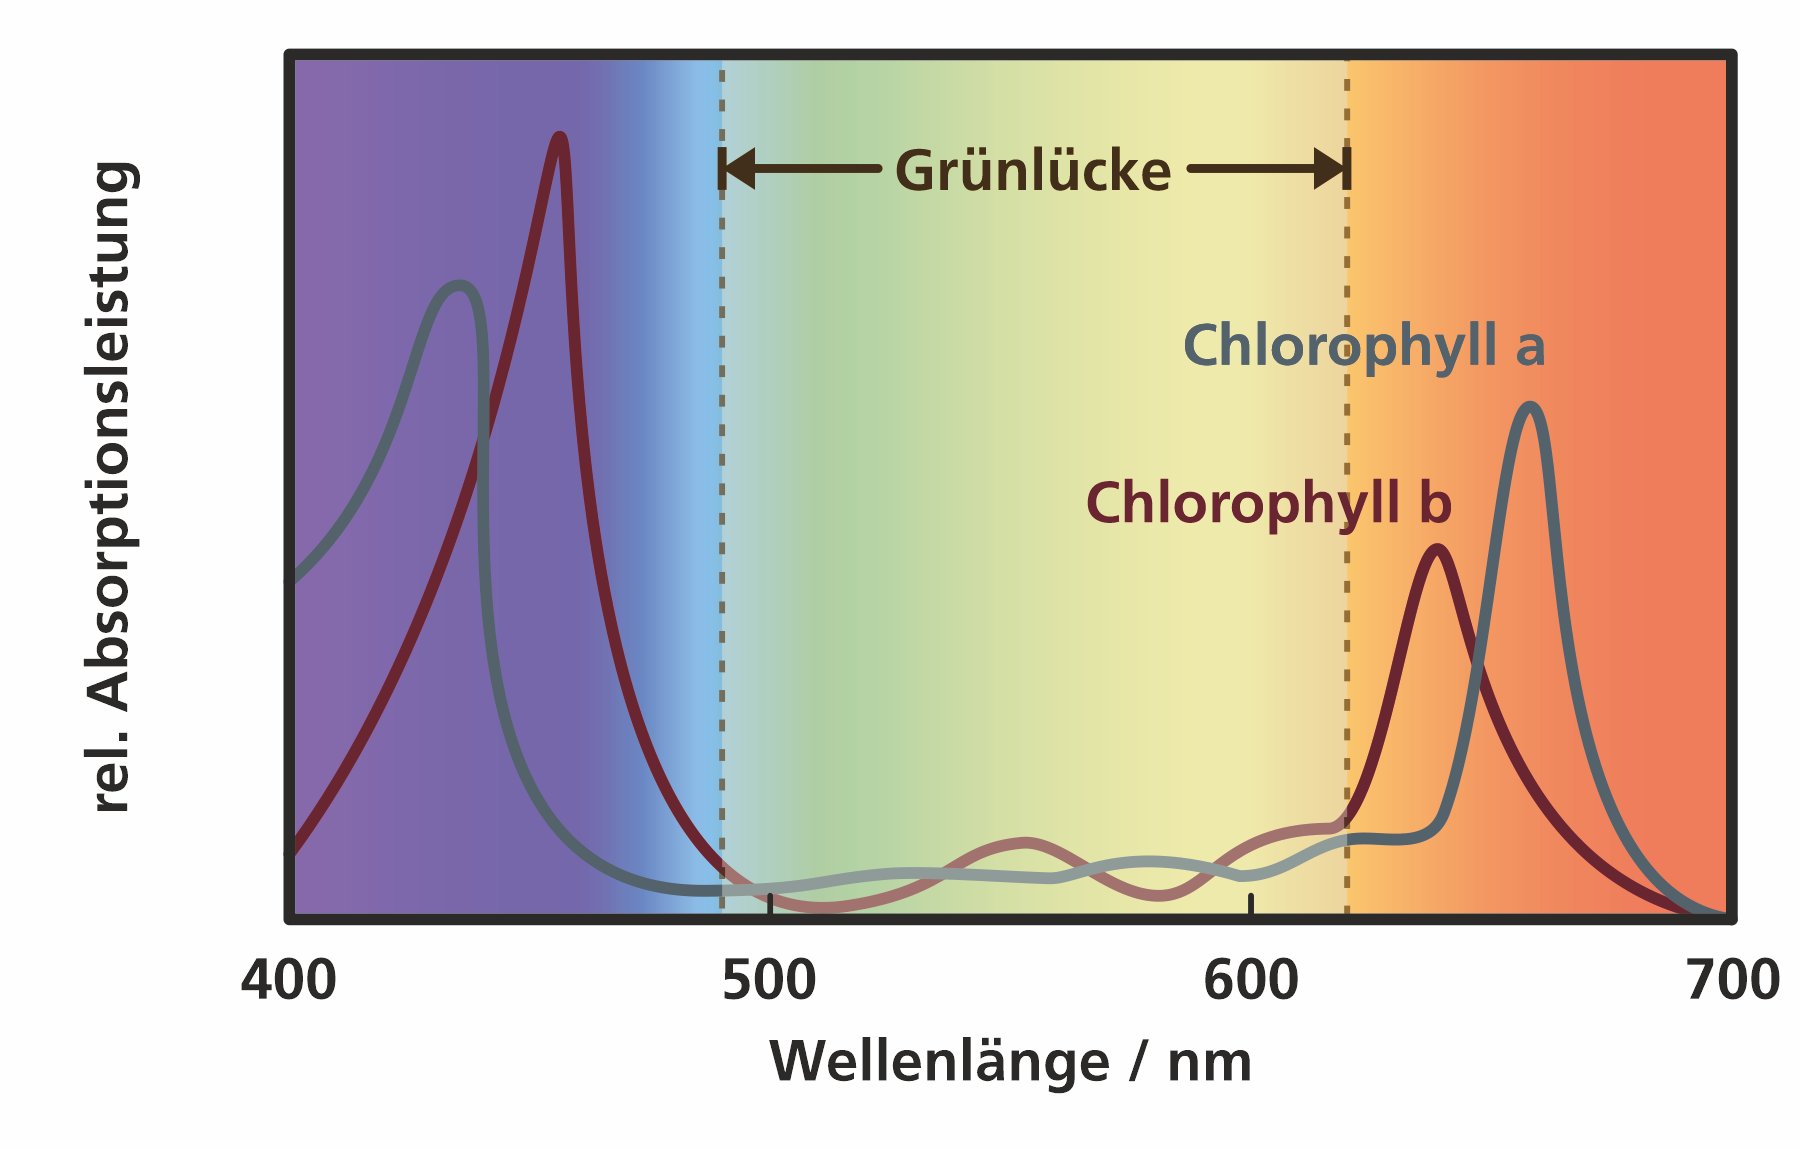 Grünlücke: Absorptionsspektrum von Chlorophyll